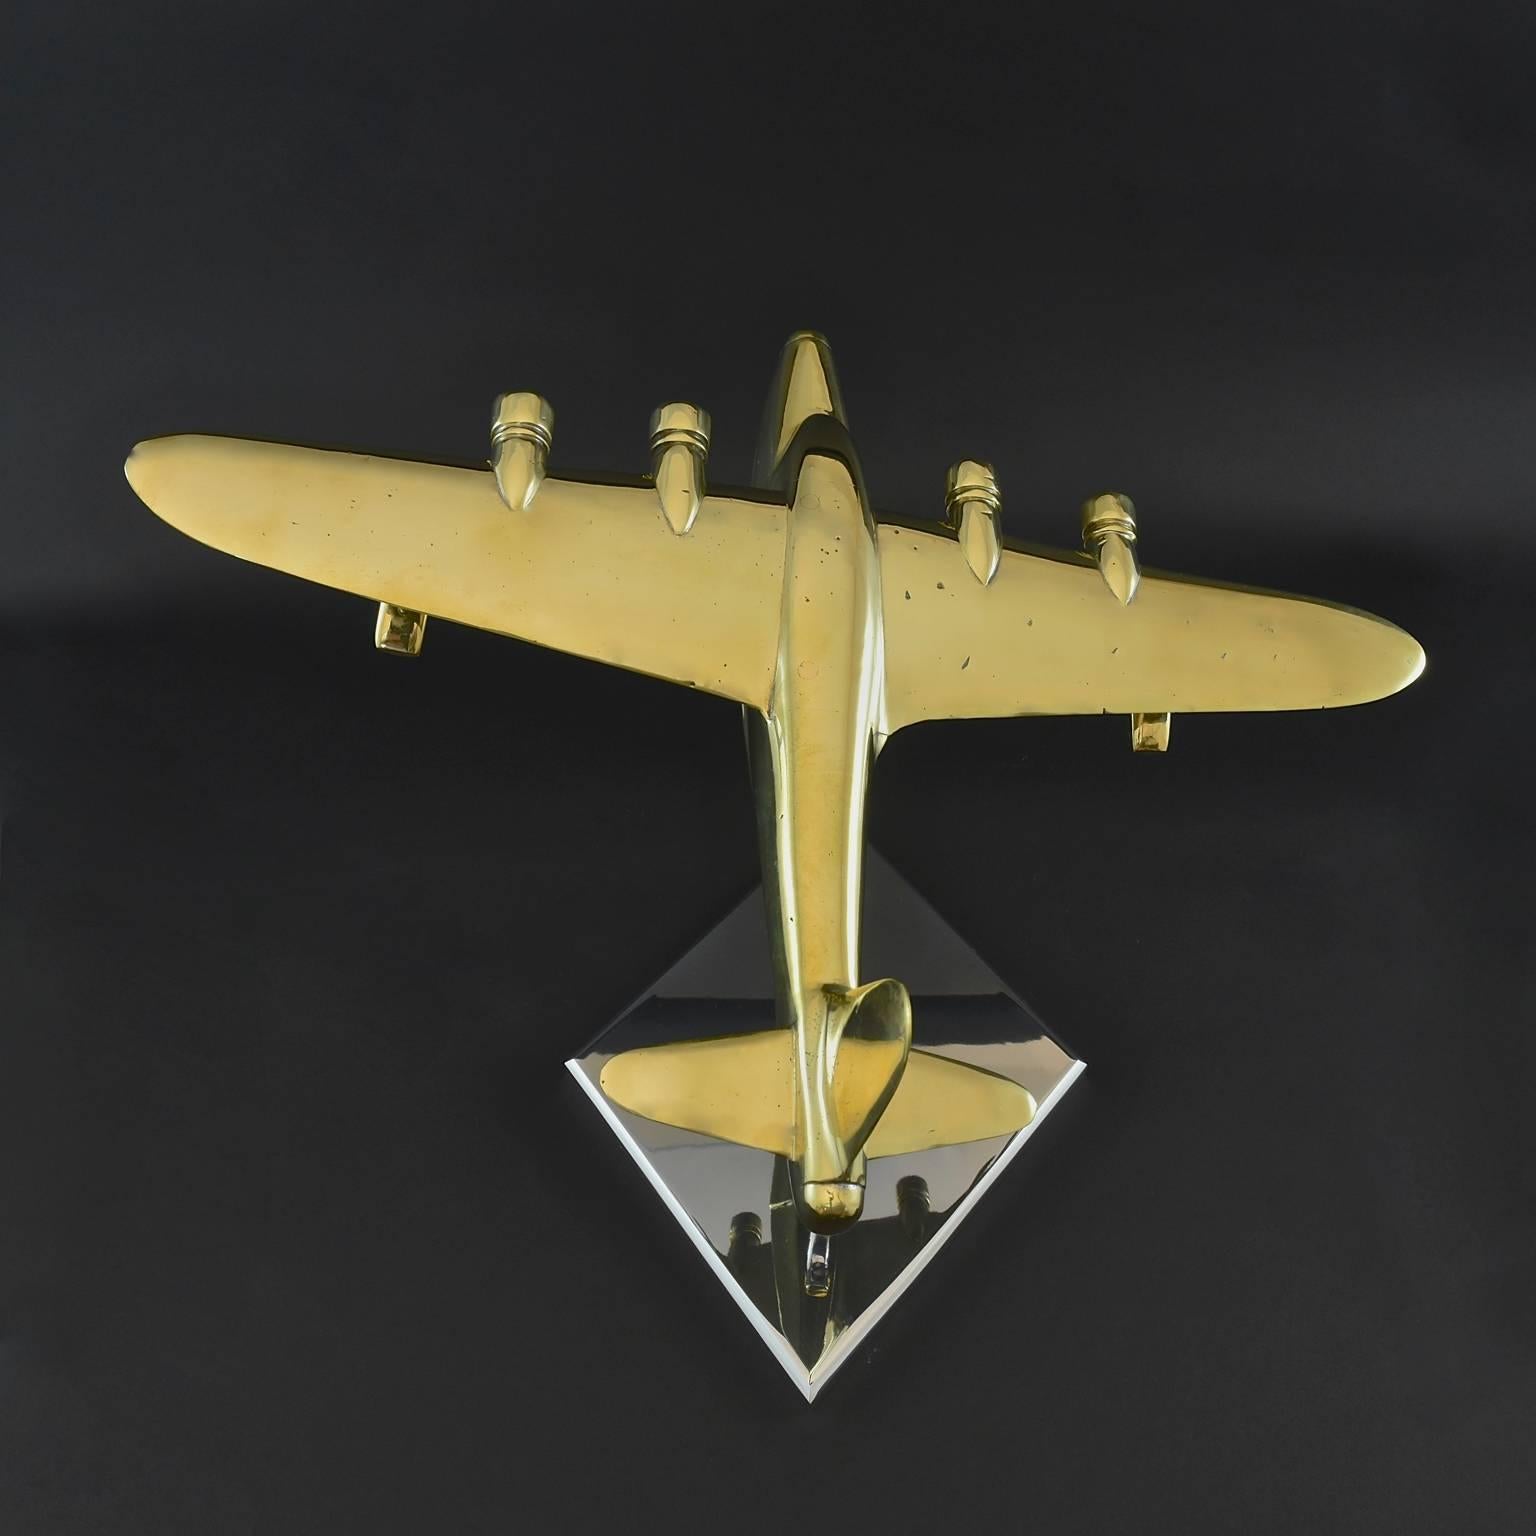 brass aircraft models